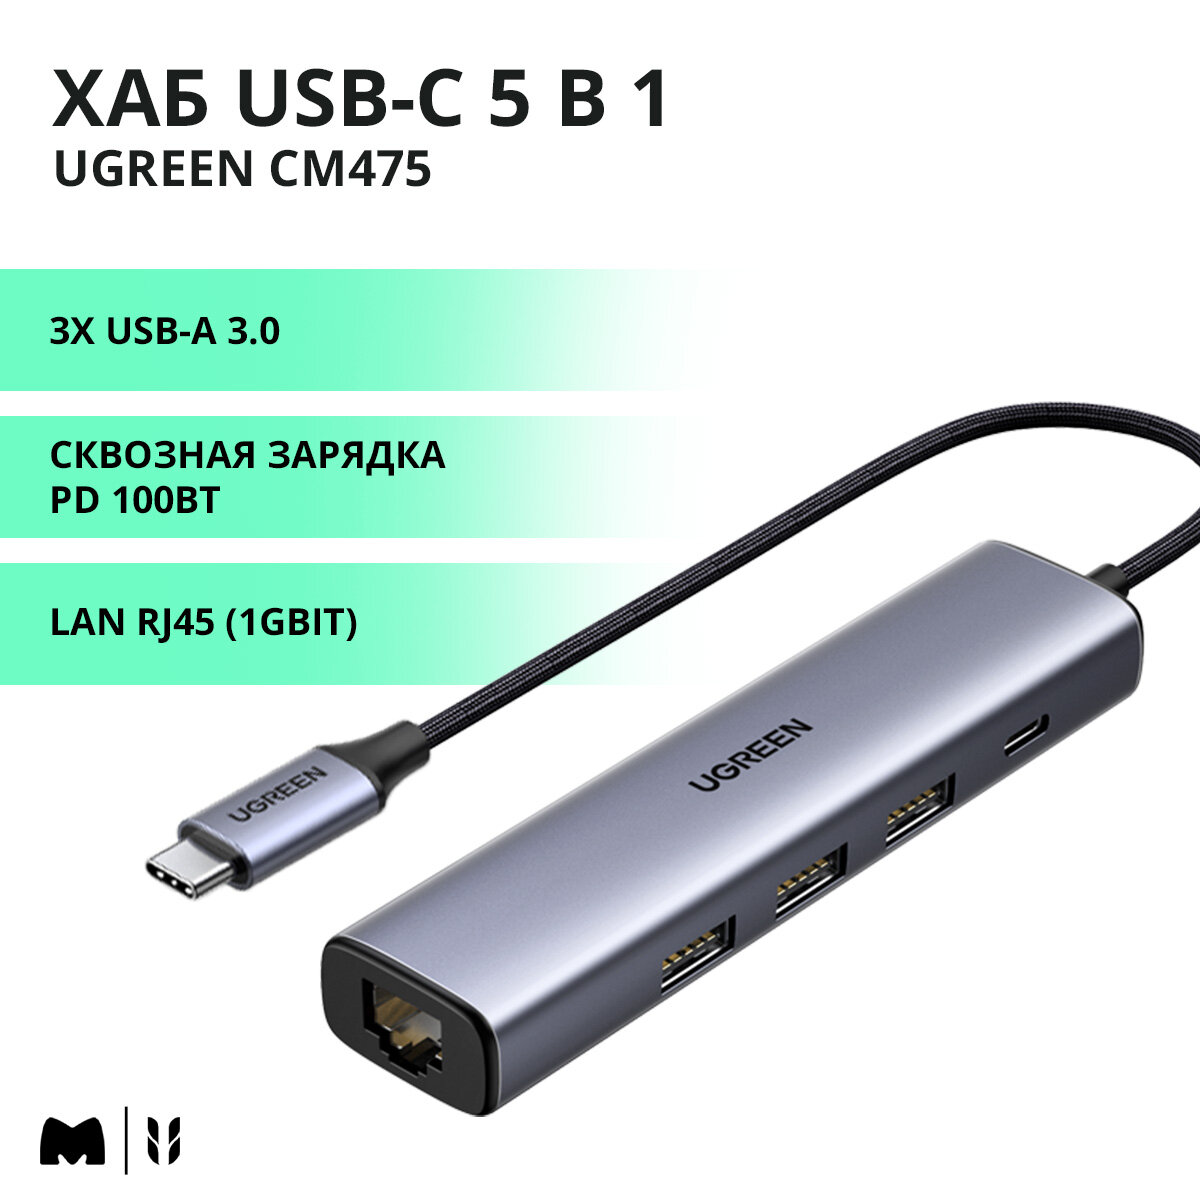 Хаб USB-C 5 в 1 UGREEN CM475 / 3хUSB-A 3.0 / LAN RJ45 (1Gbit) / PD зарядка 100Вт / цвет серый космос (20932)